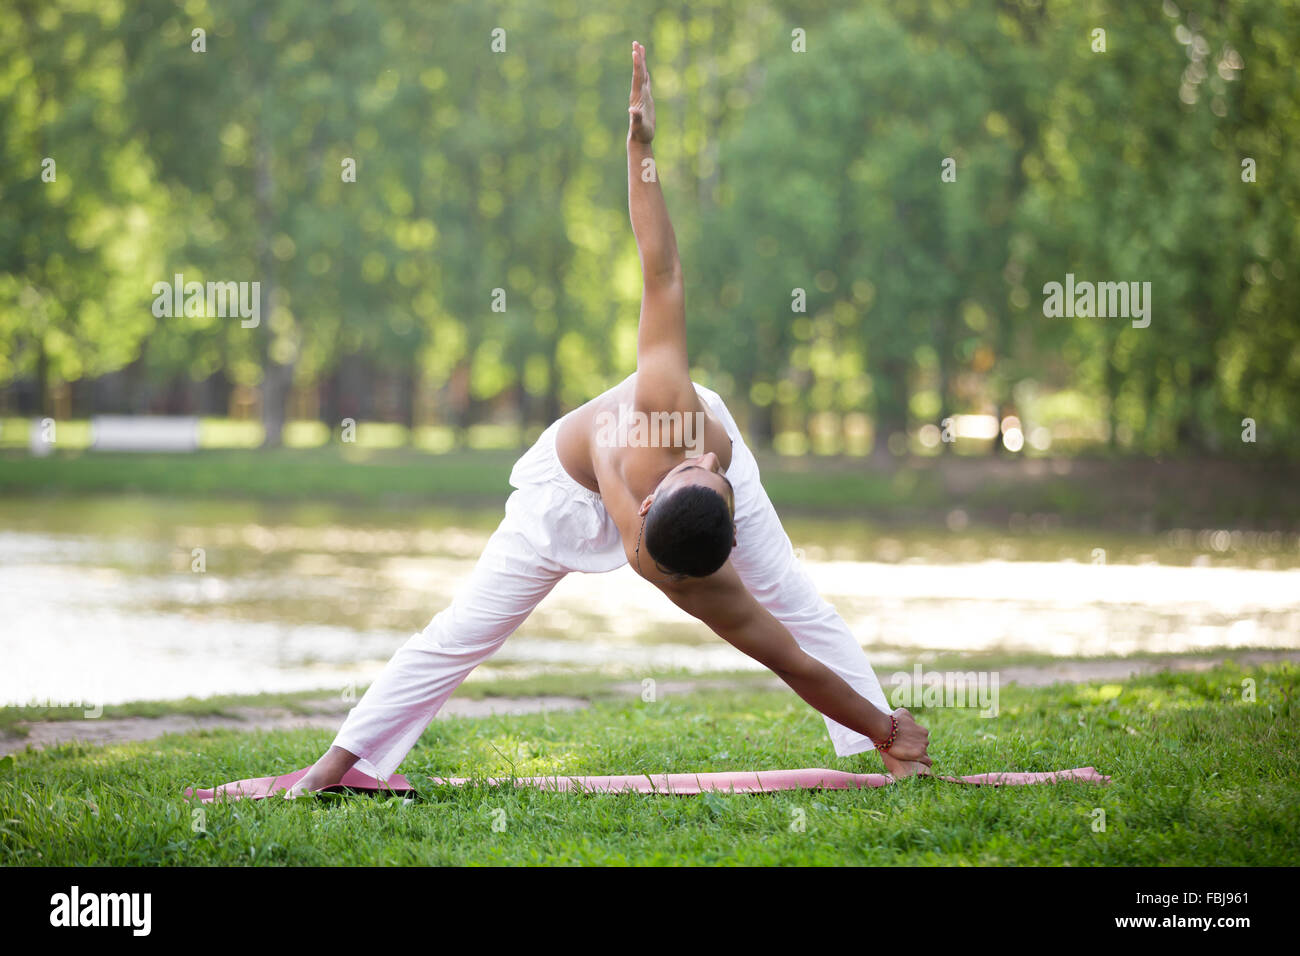 Attraktive indische Junge Yogi Mann in der weißen Leinen Kleidung am Ufer des Flusses im Park, im Dreieck Kreuz stand trainieren Körperhaltung va Stockfoto